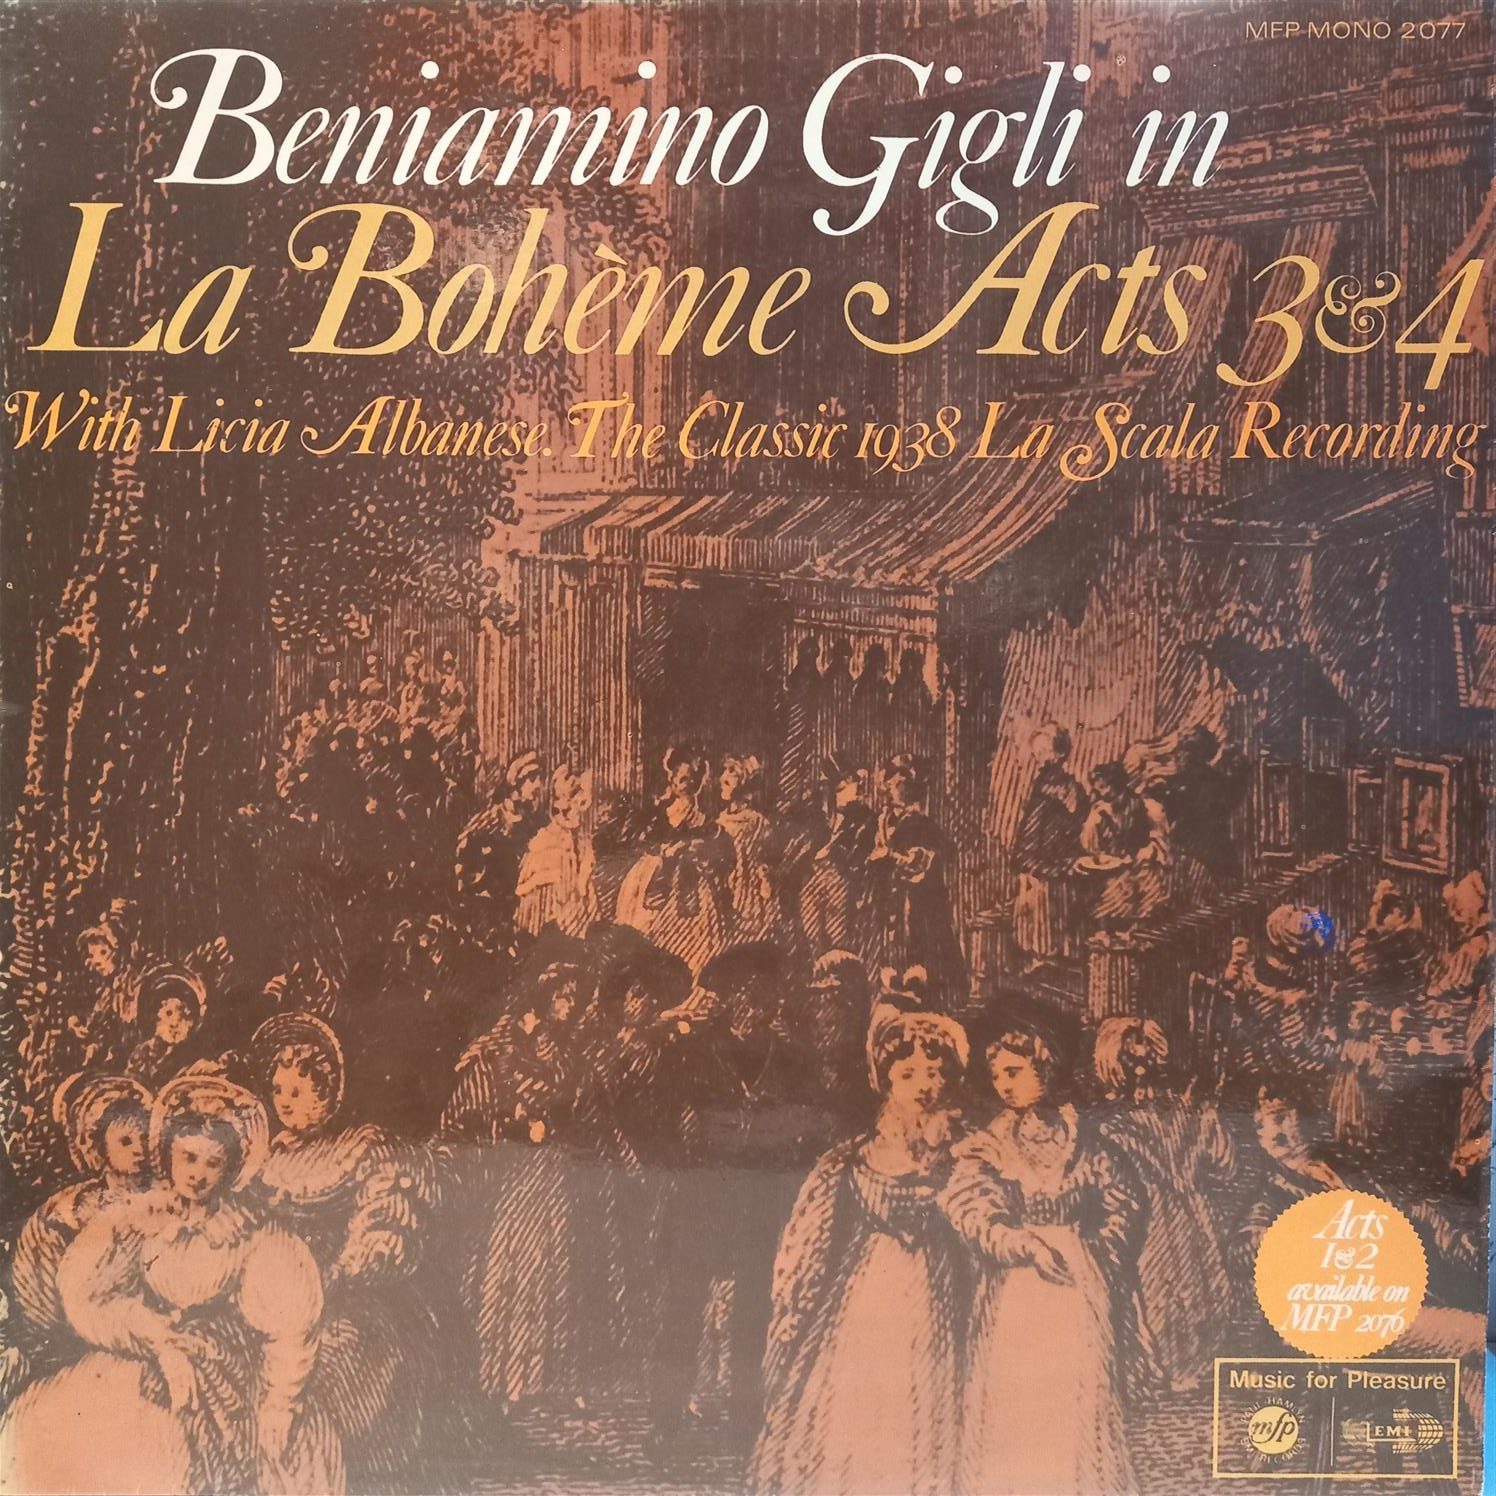 BENIAMINO GIGLI – LA BOHEME ACTS 3 & 4 ON